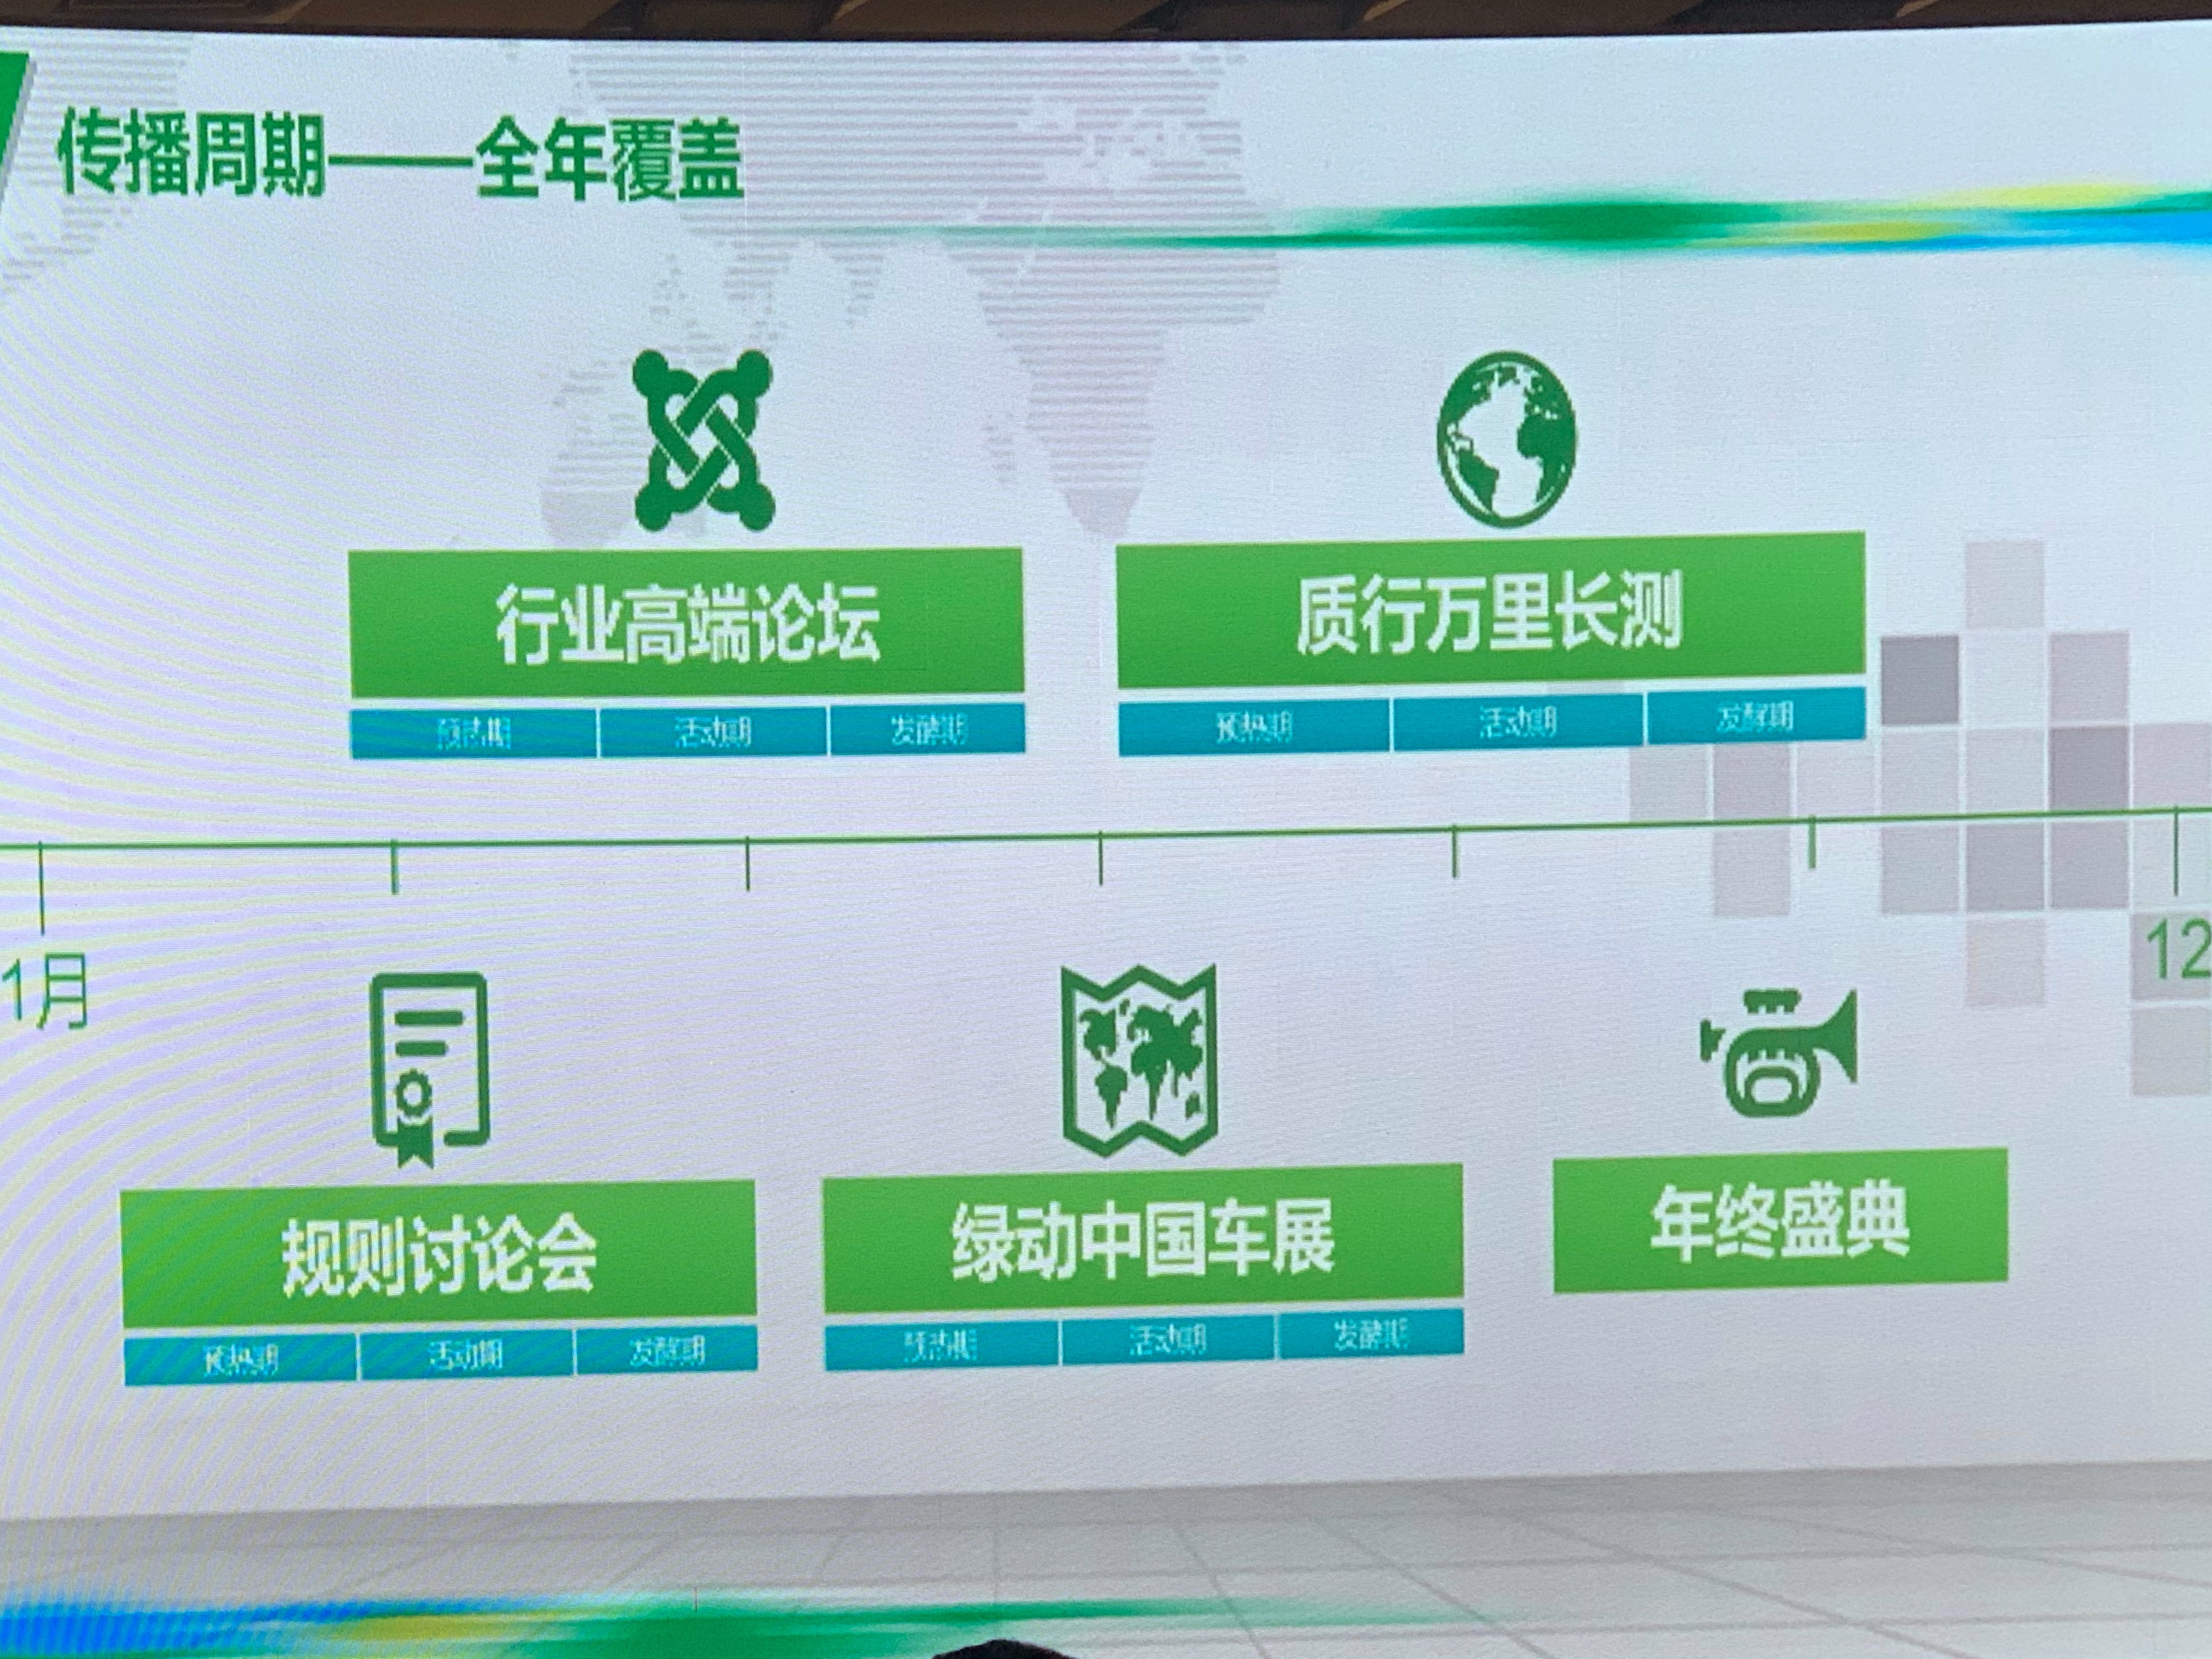 更加贴近消费者 2019中国新能源汽车大赛启程